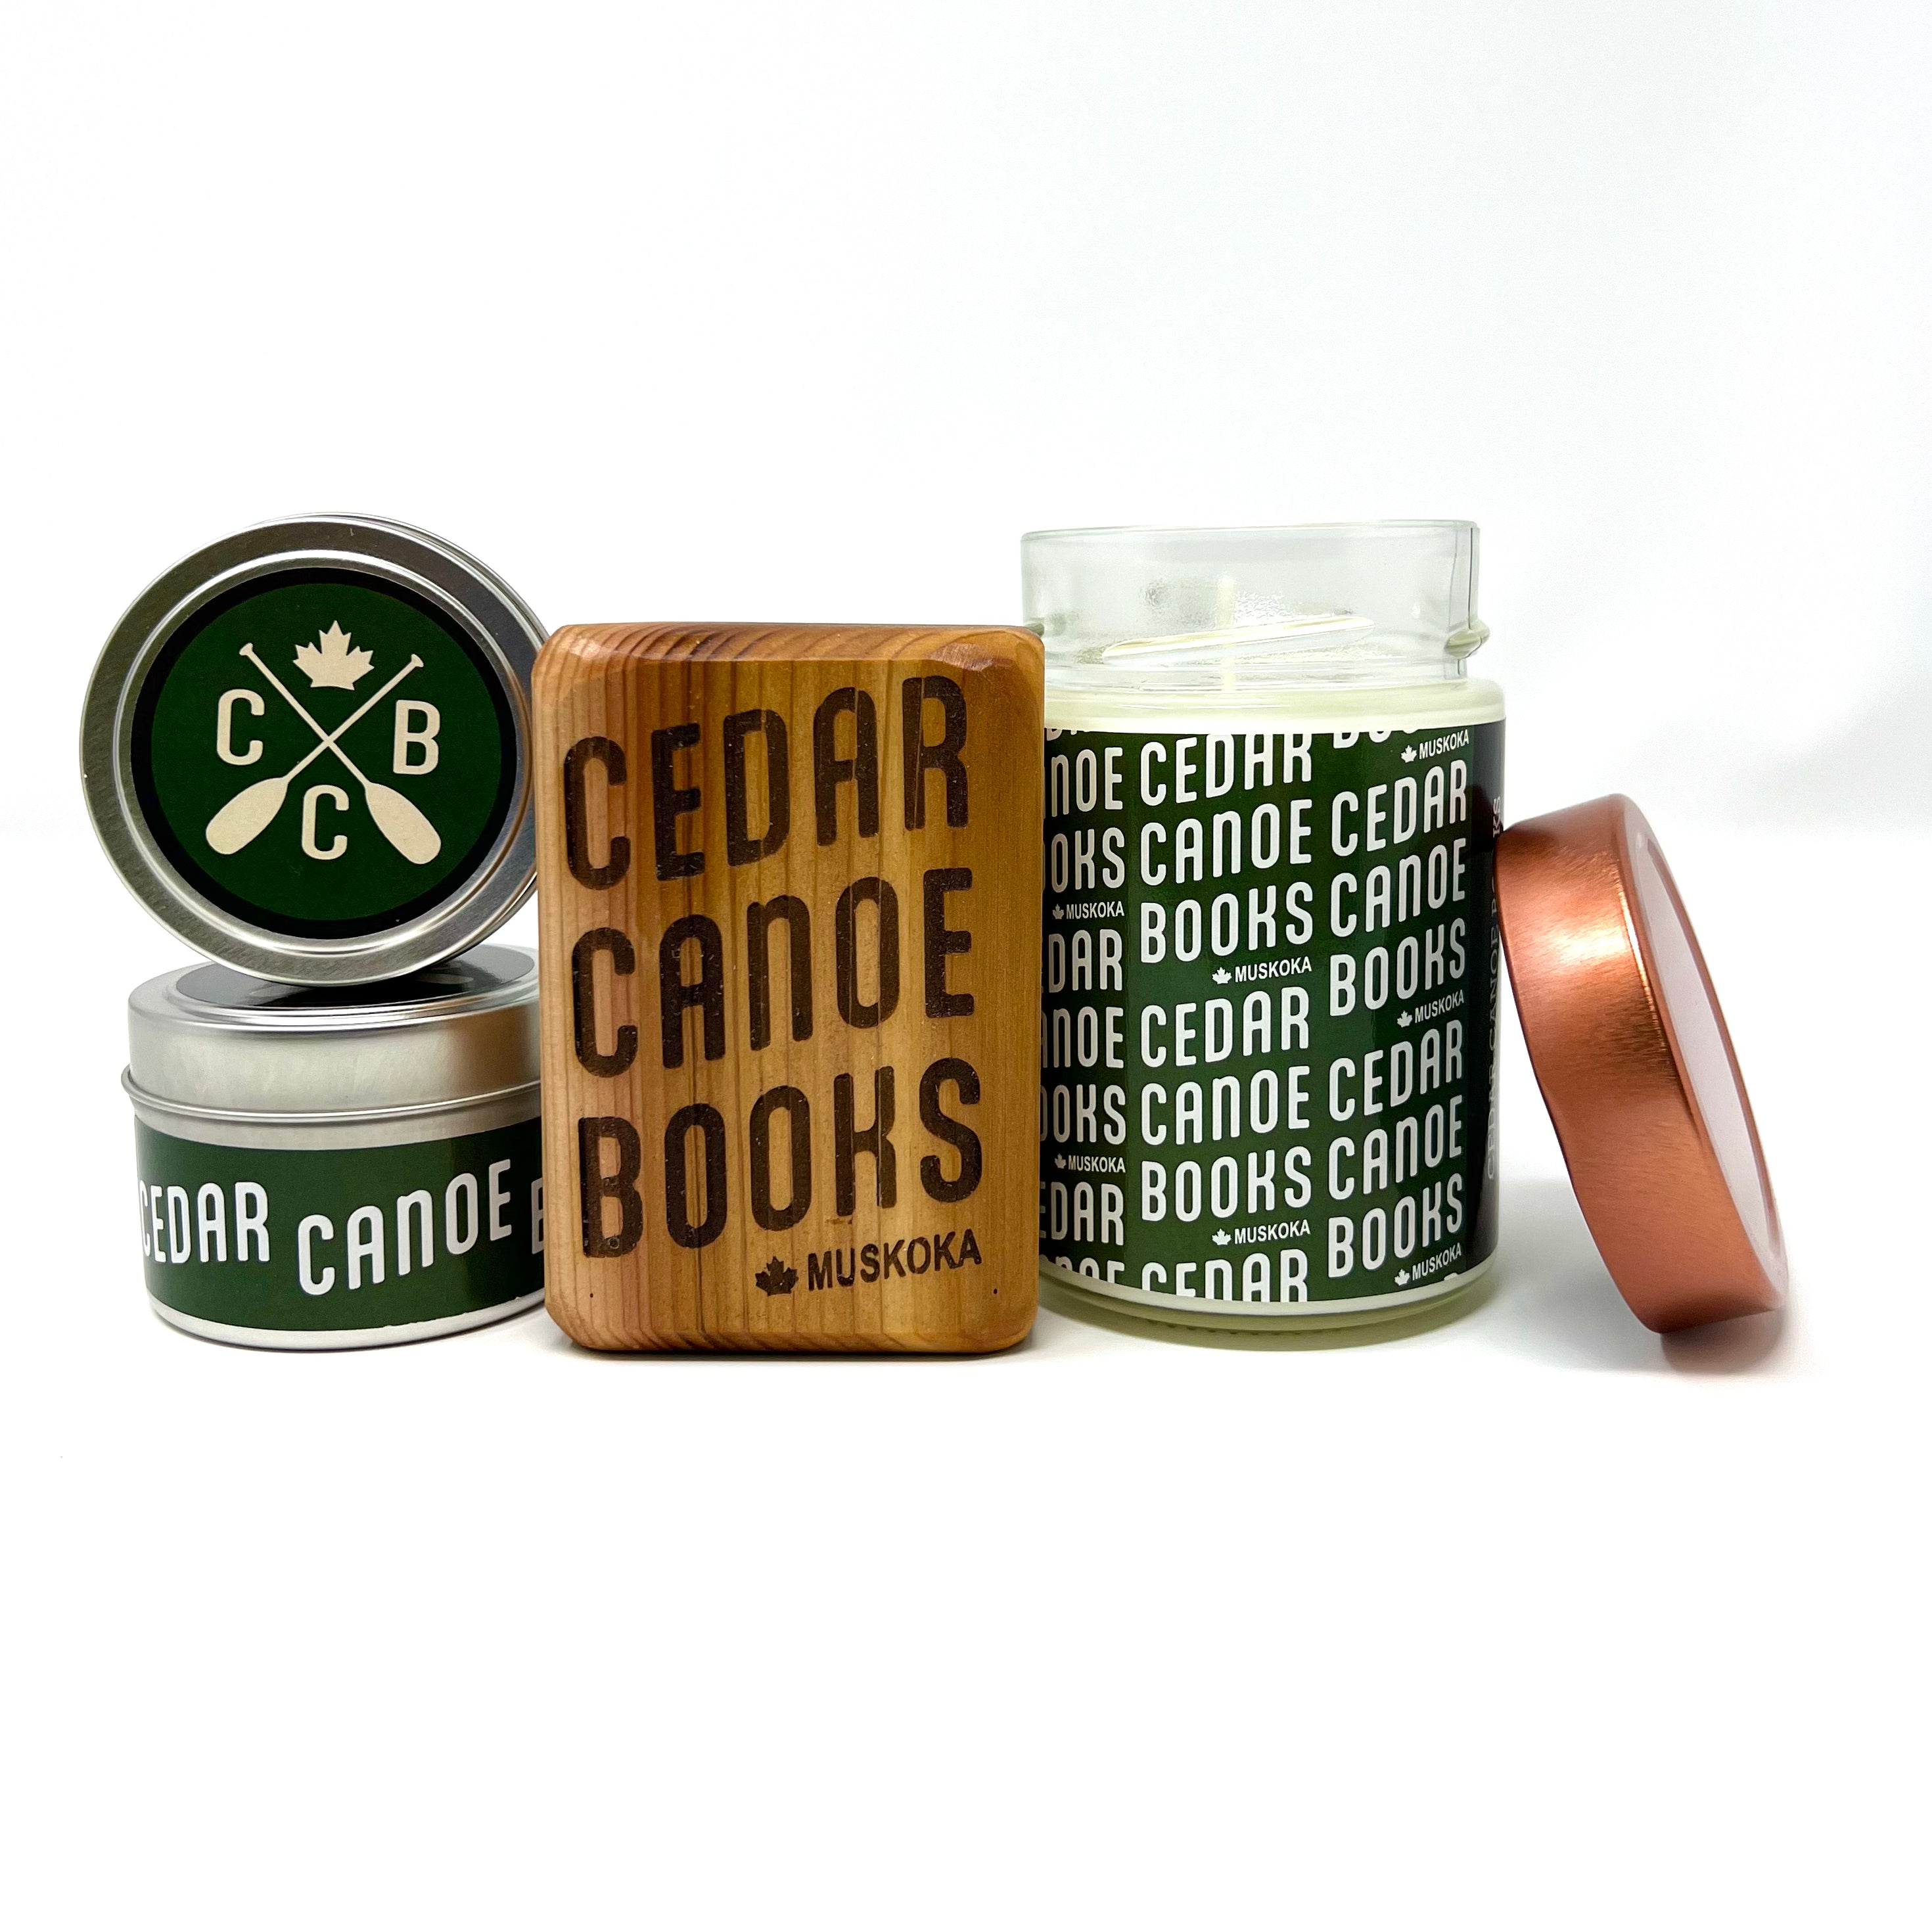 Cedar Canoe Books